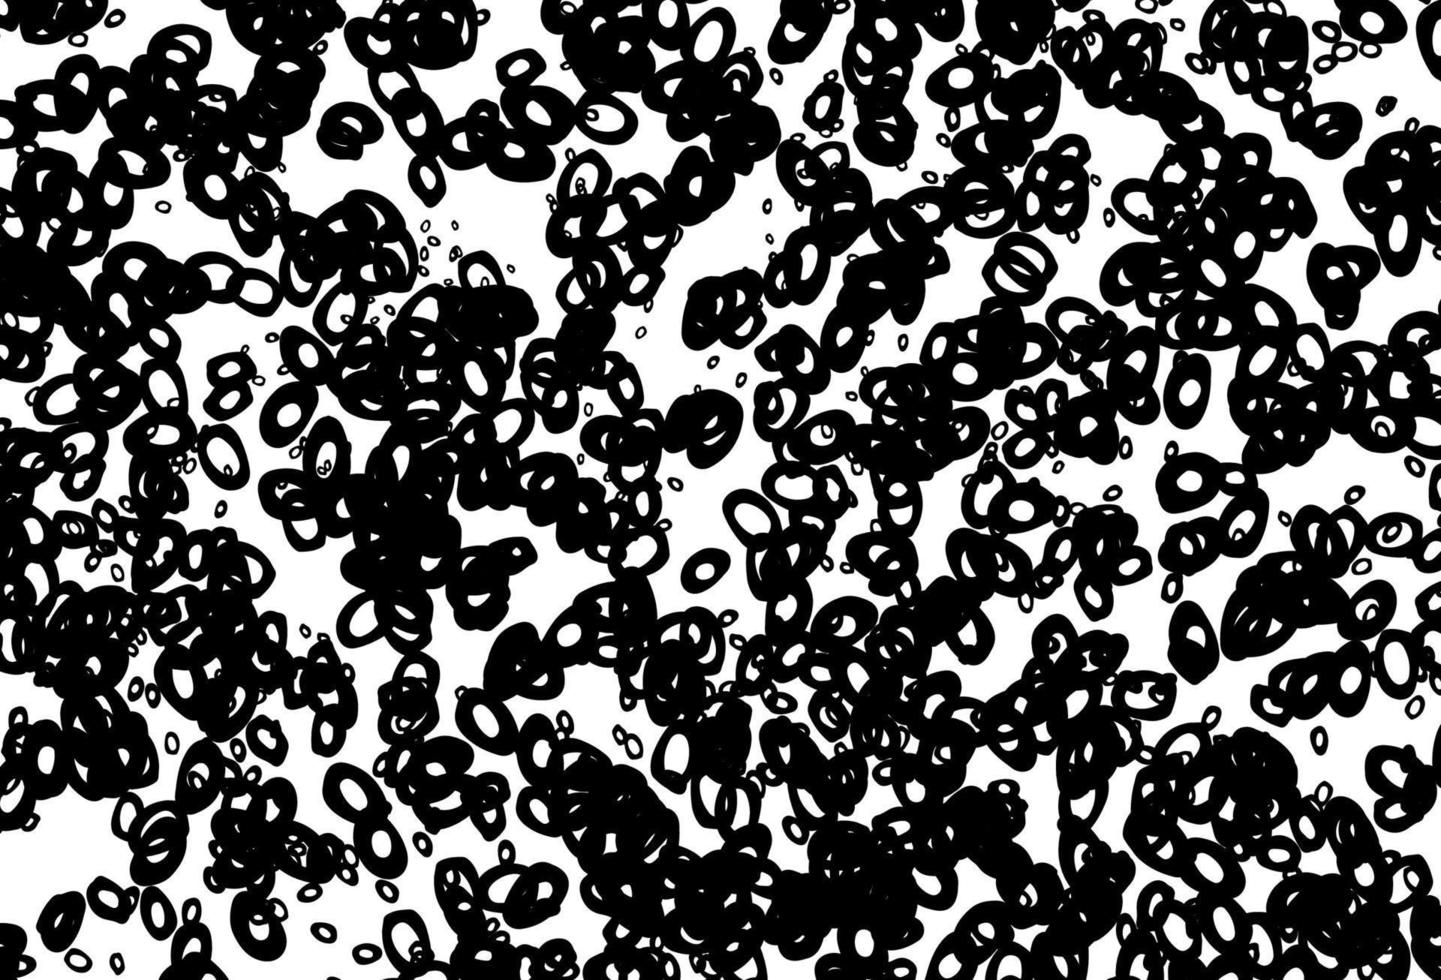 zwart-wit vector achtergrond met bubbels.